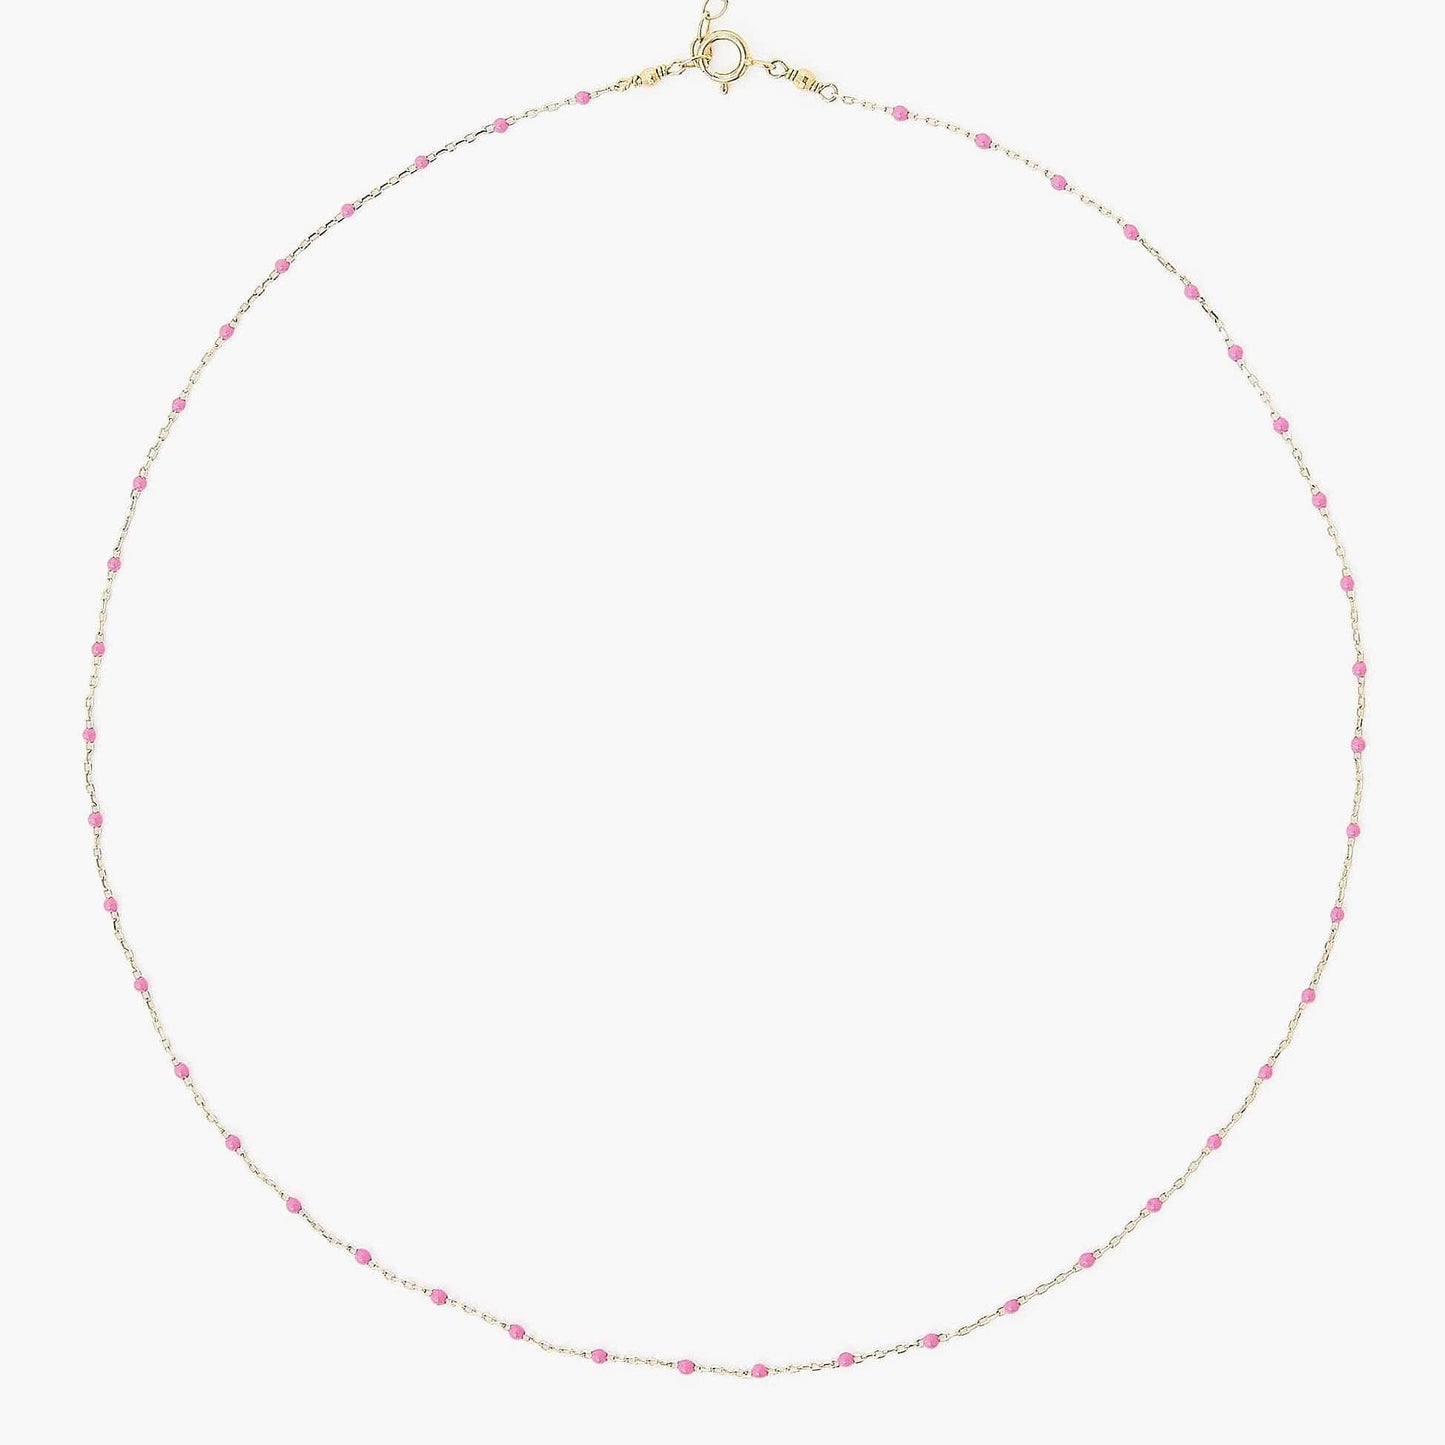 NKL-GPL Pink Rose Enamel Bead Necklace